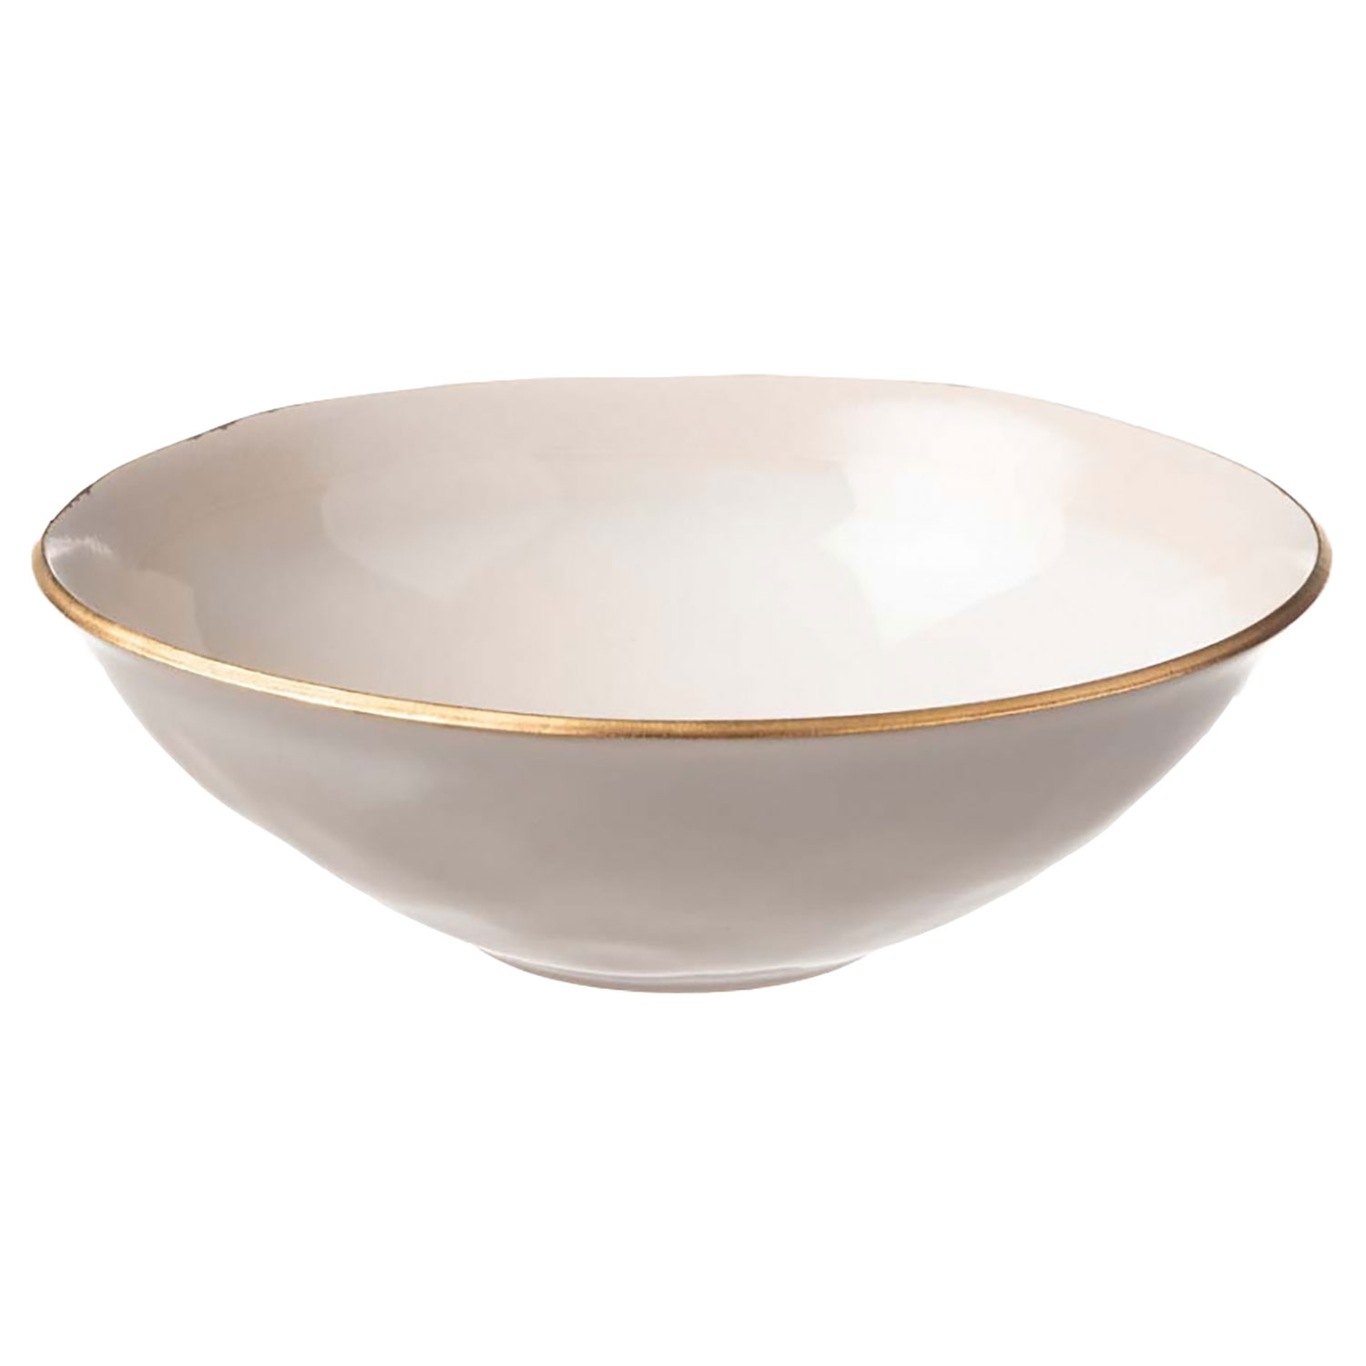 Nosse Ceramics Edge Bowl Ivory Gold, 25 cm